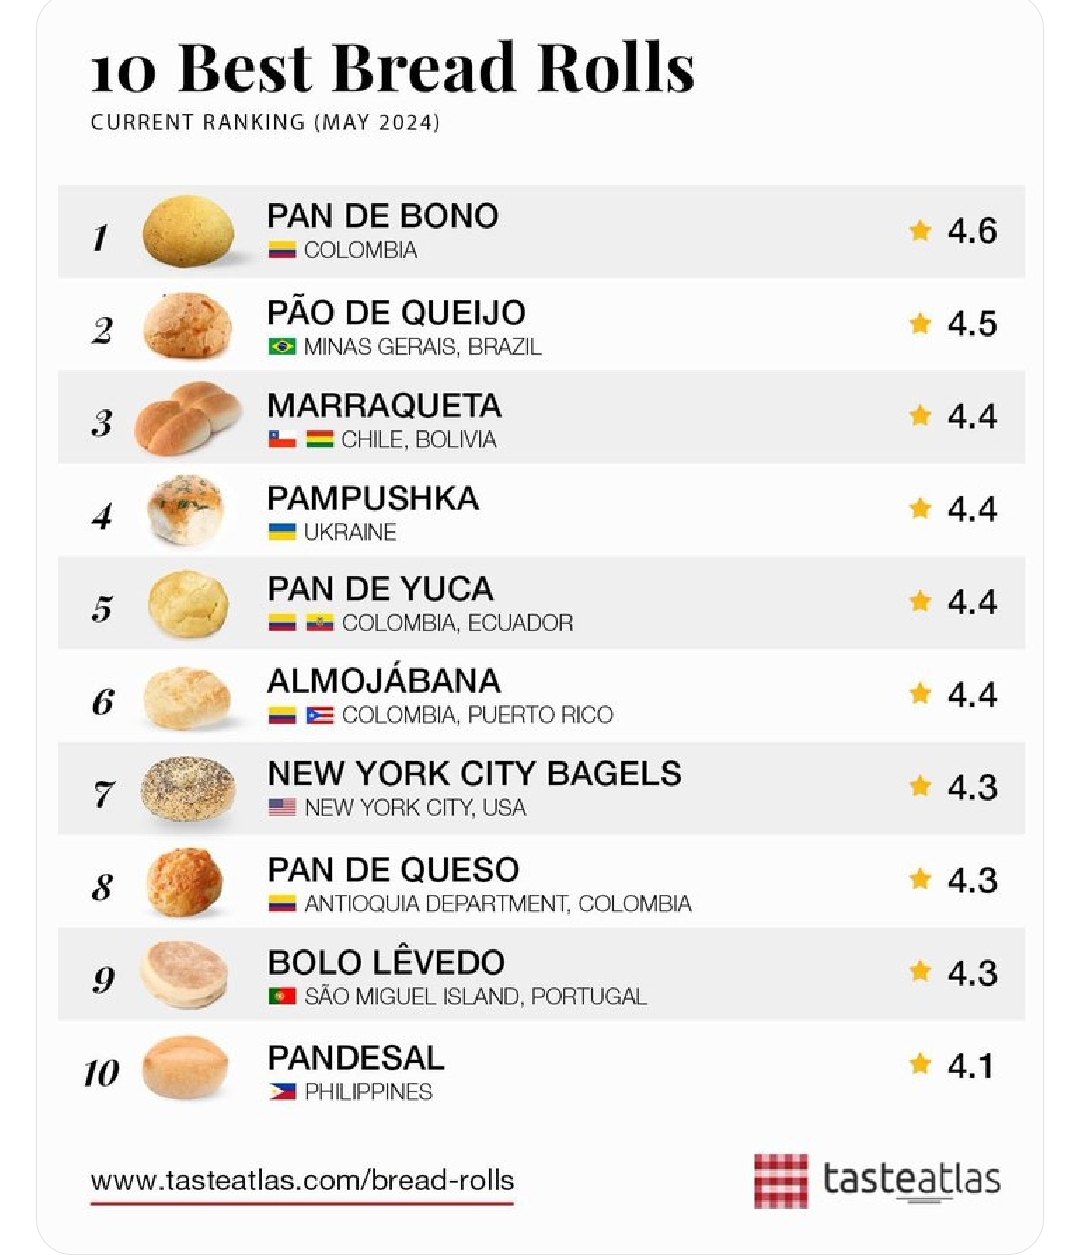 El pan de yuca, ecuatoriano y colombiano, fue elegido como el quinto mejor panecillo en el mundo